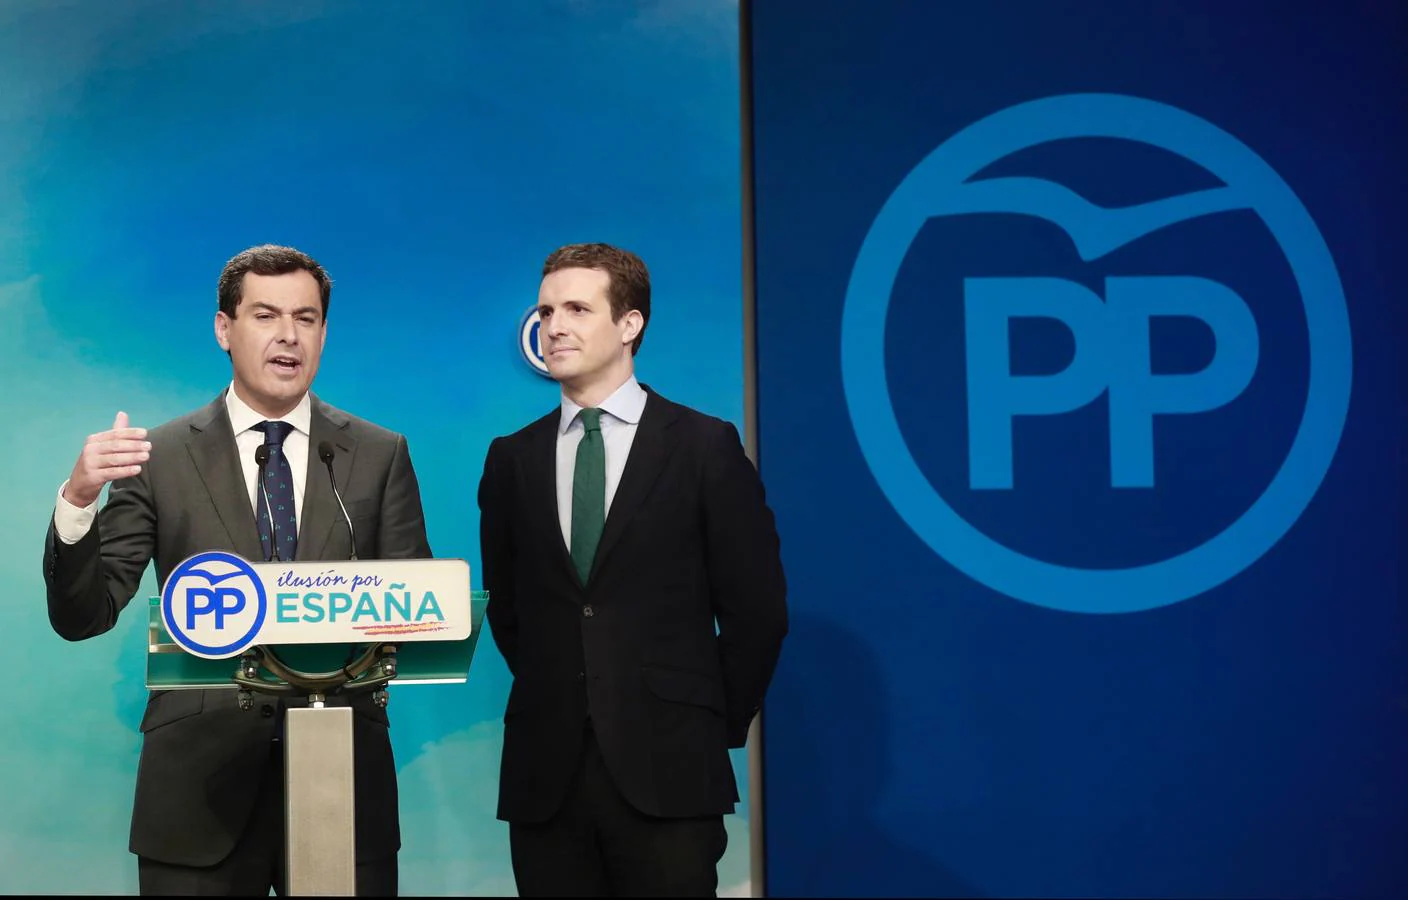 El líder del PP andaluz, Juanma Moreno, compareciendo junto al presidente del PP, Pablo Casado